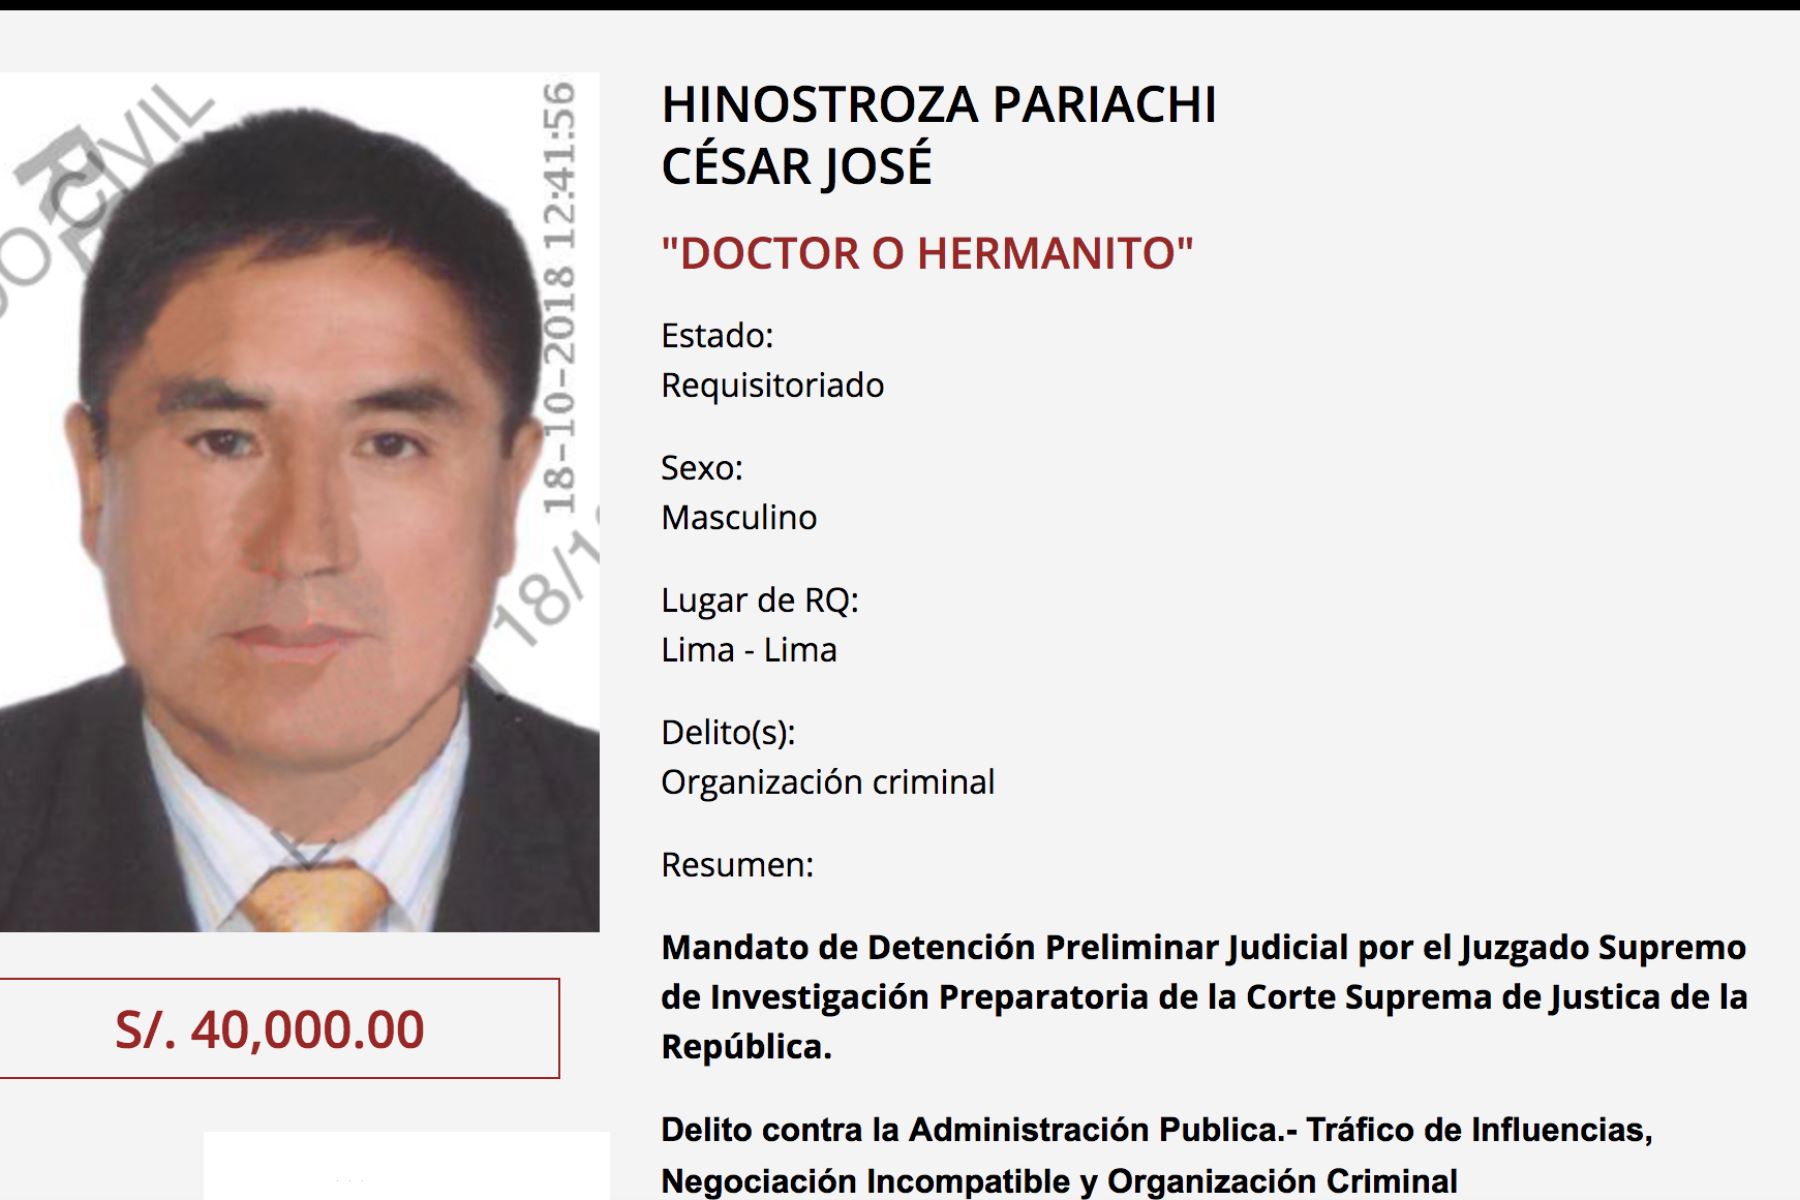 Prófugo César Hinostroza es sindicado cabecilla de la organización criminal Los Cuellos Blancos del Puerto.